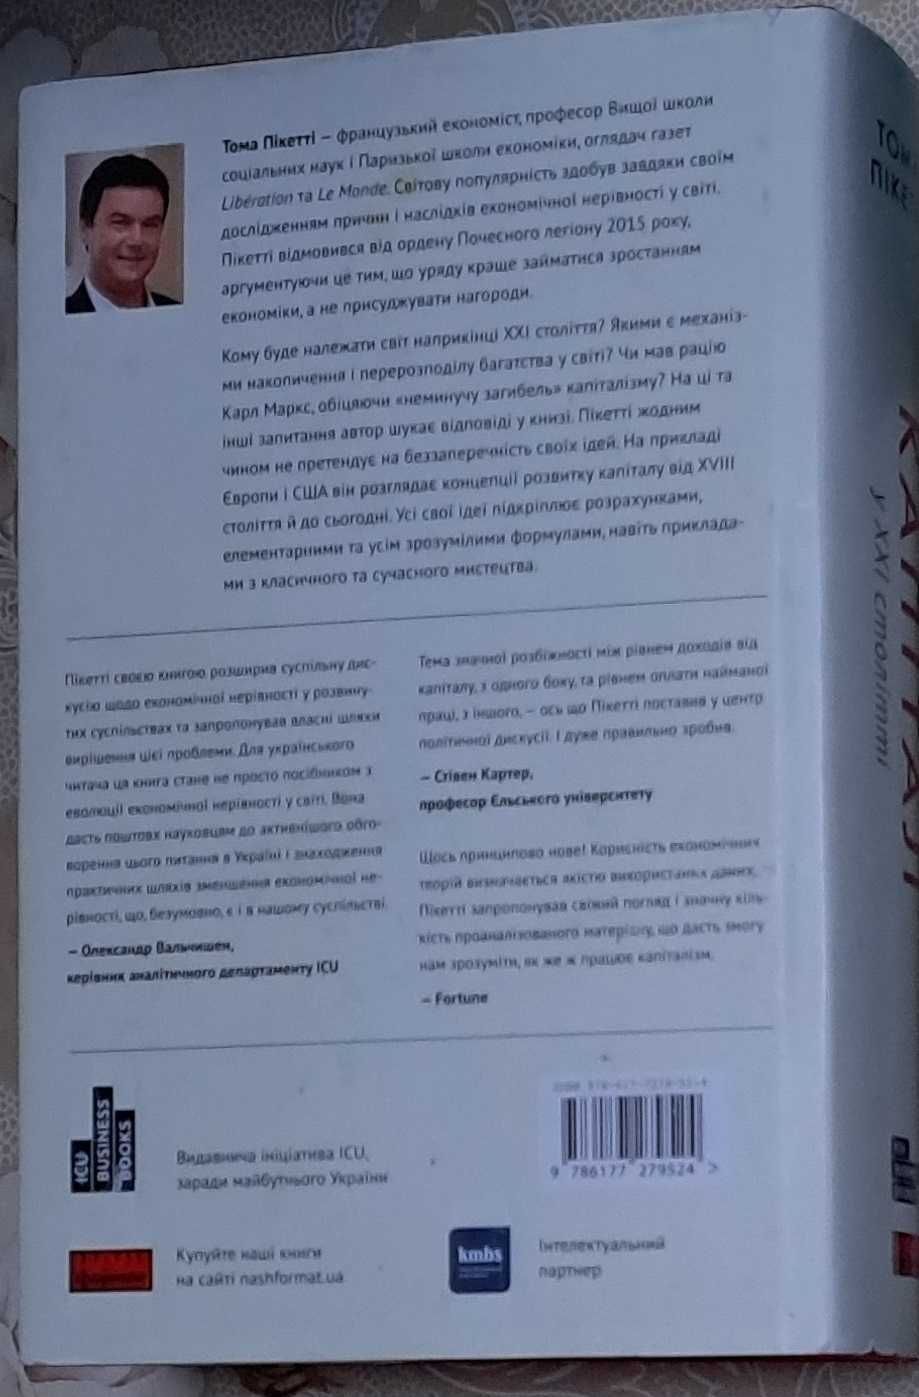 Капітал у ХХІ столітті Toma Пікетті унікальна книга укр